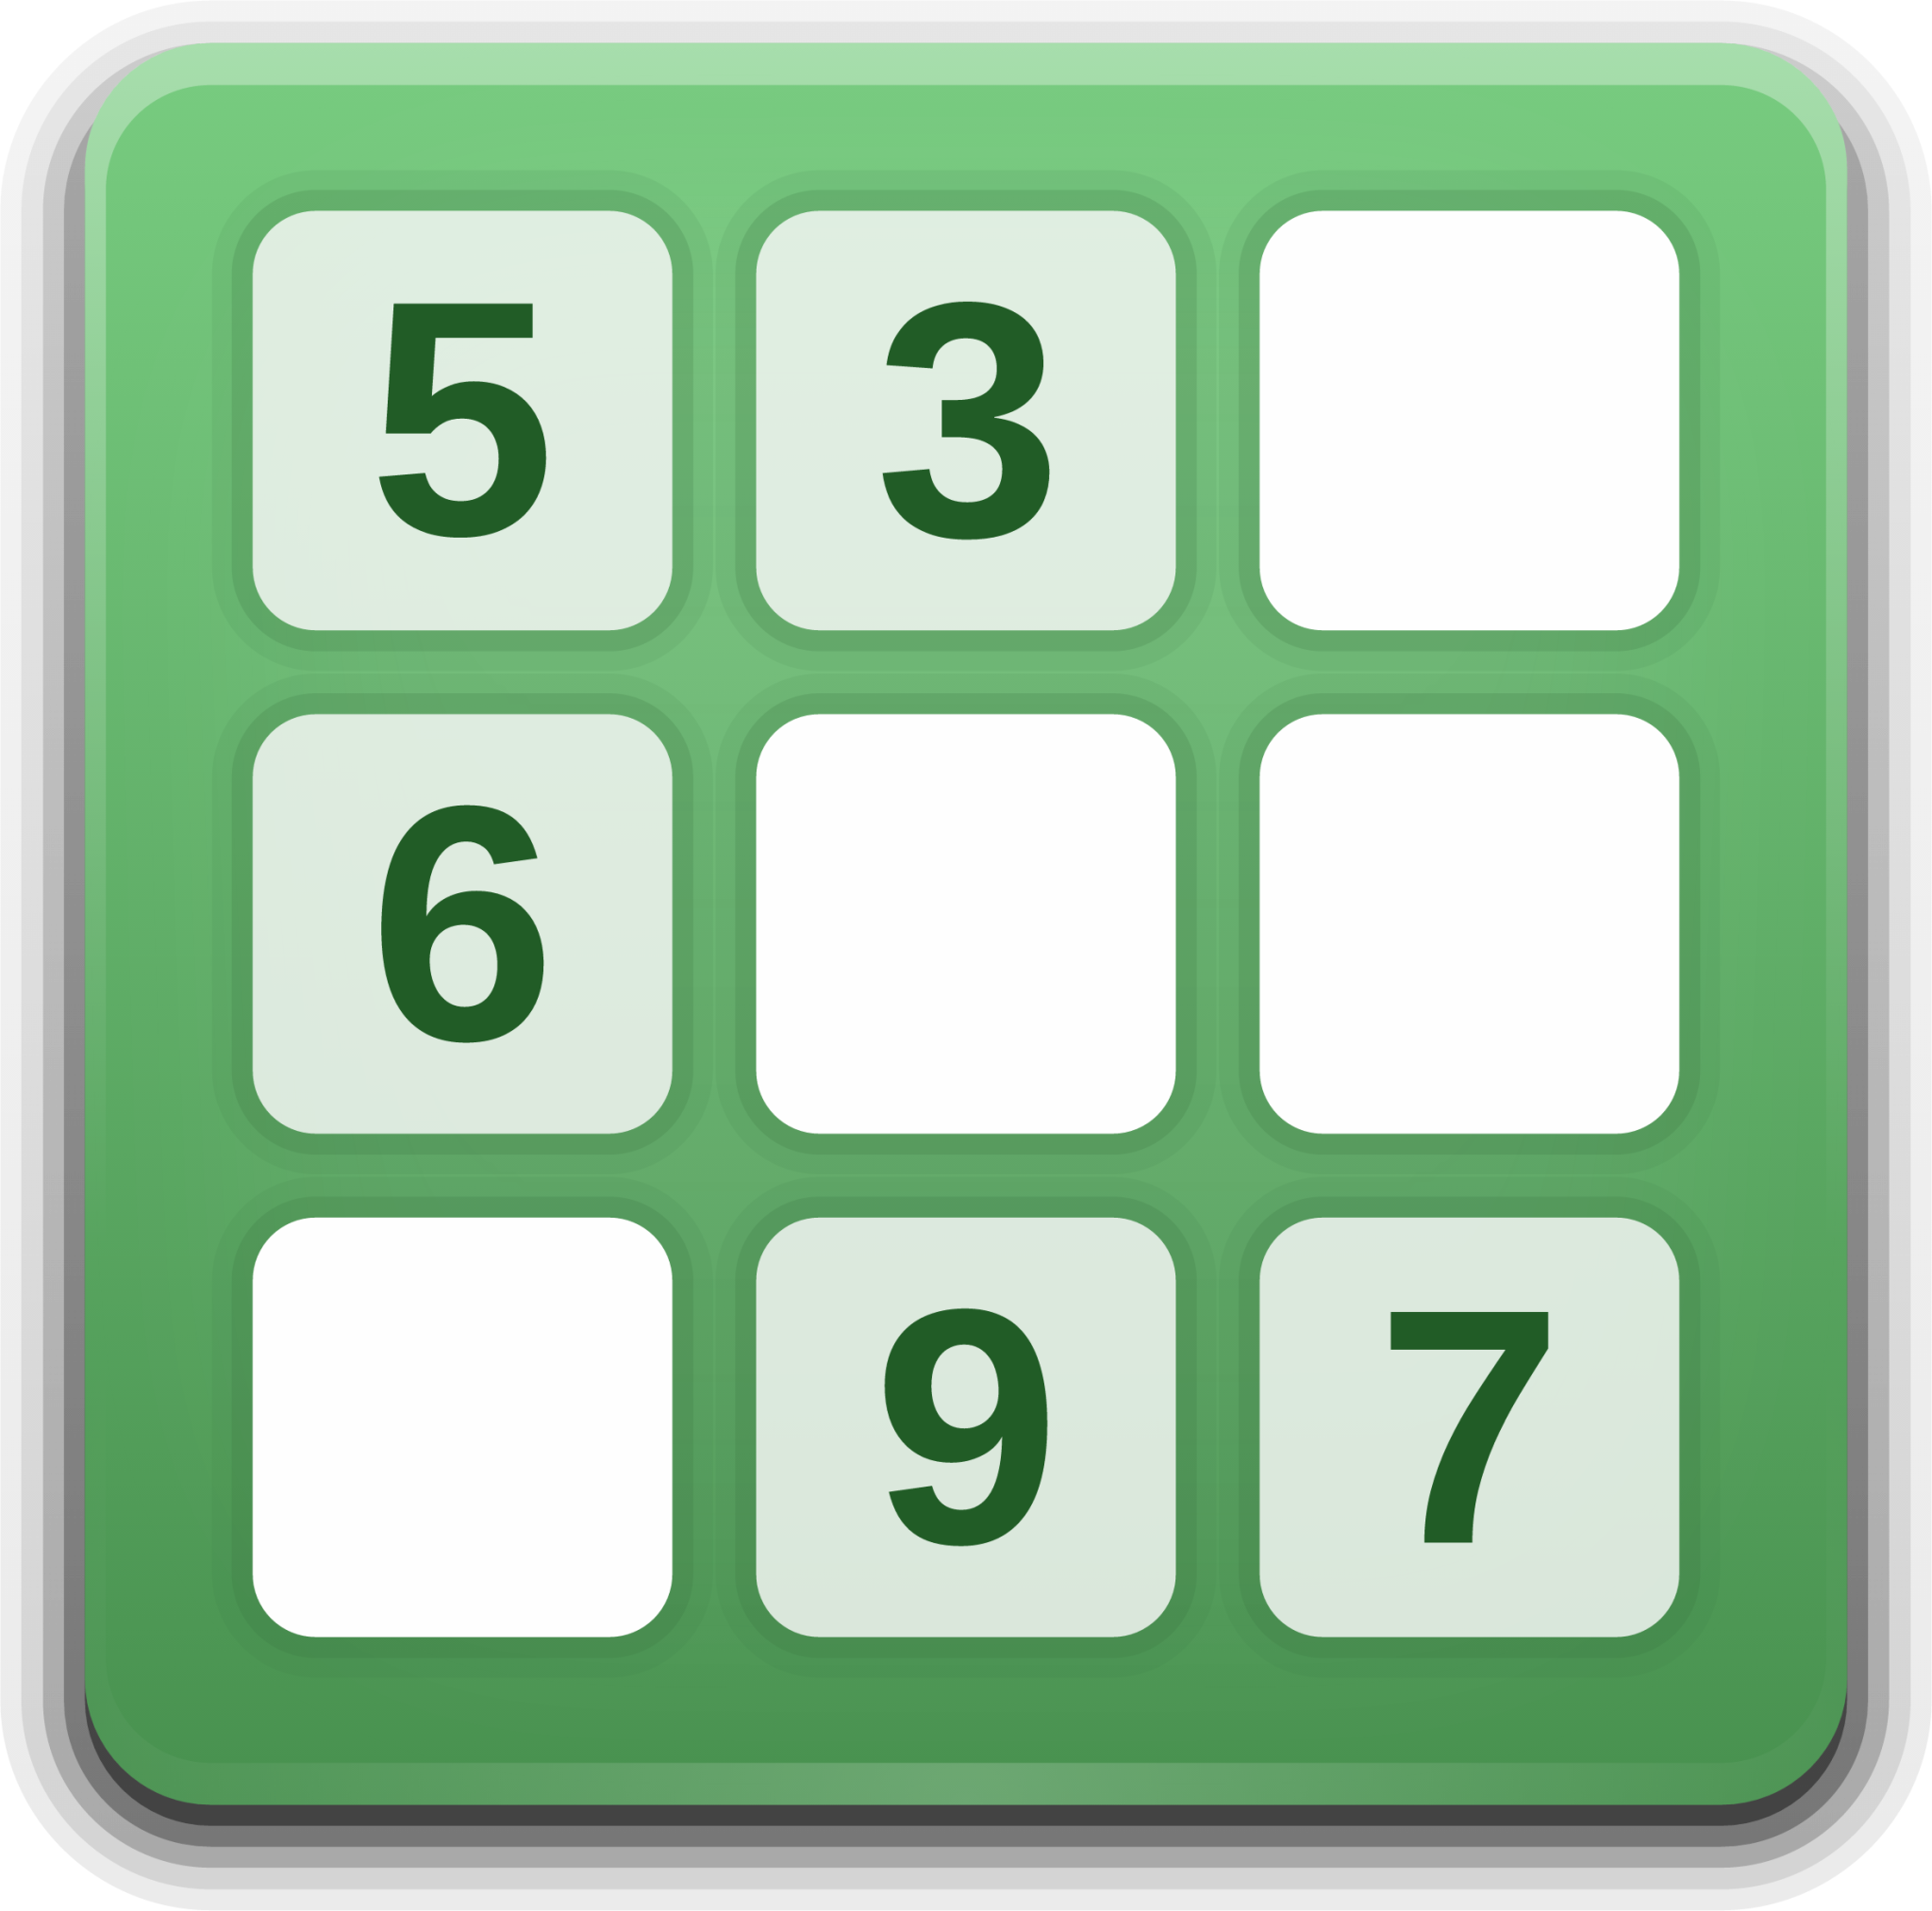 gnome sudoku icon